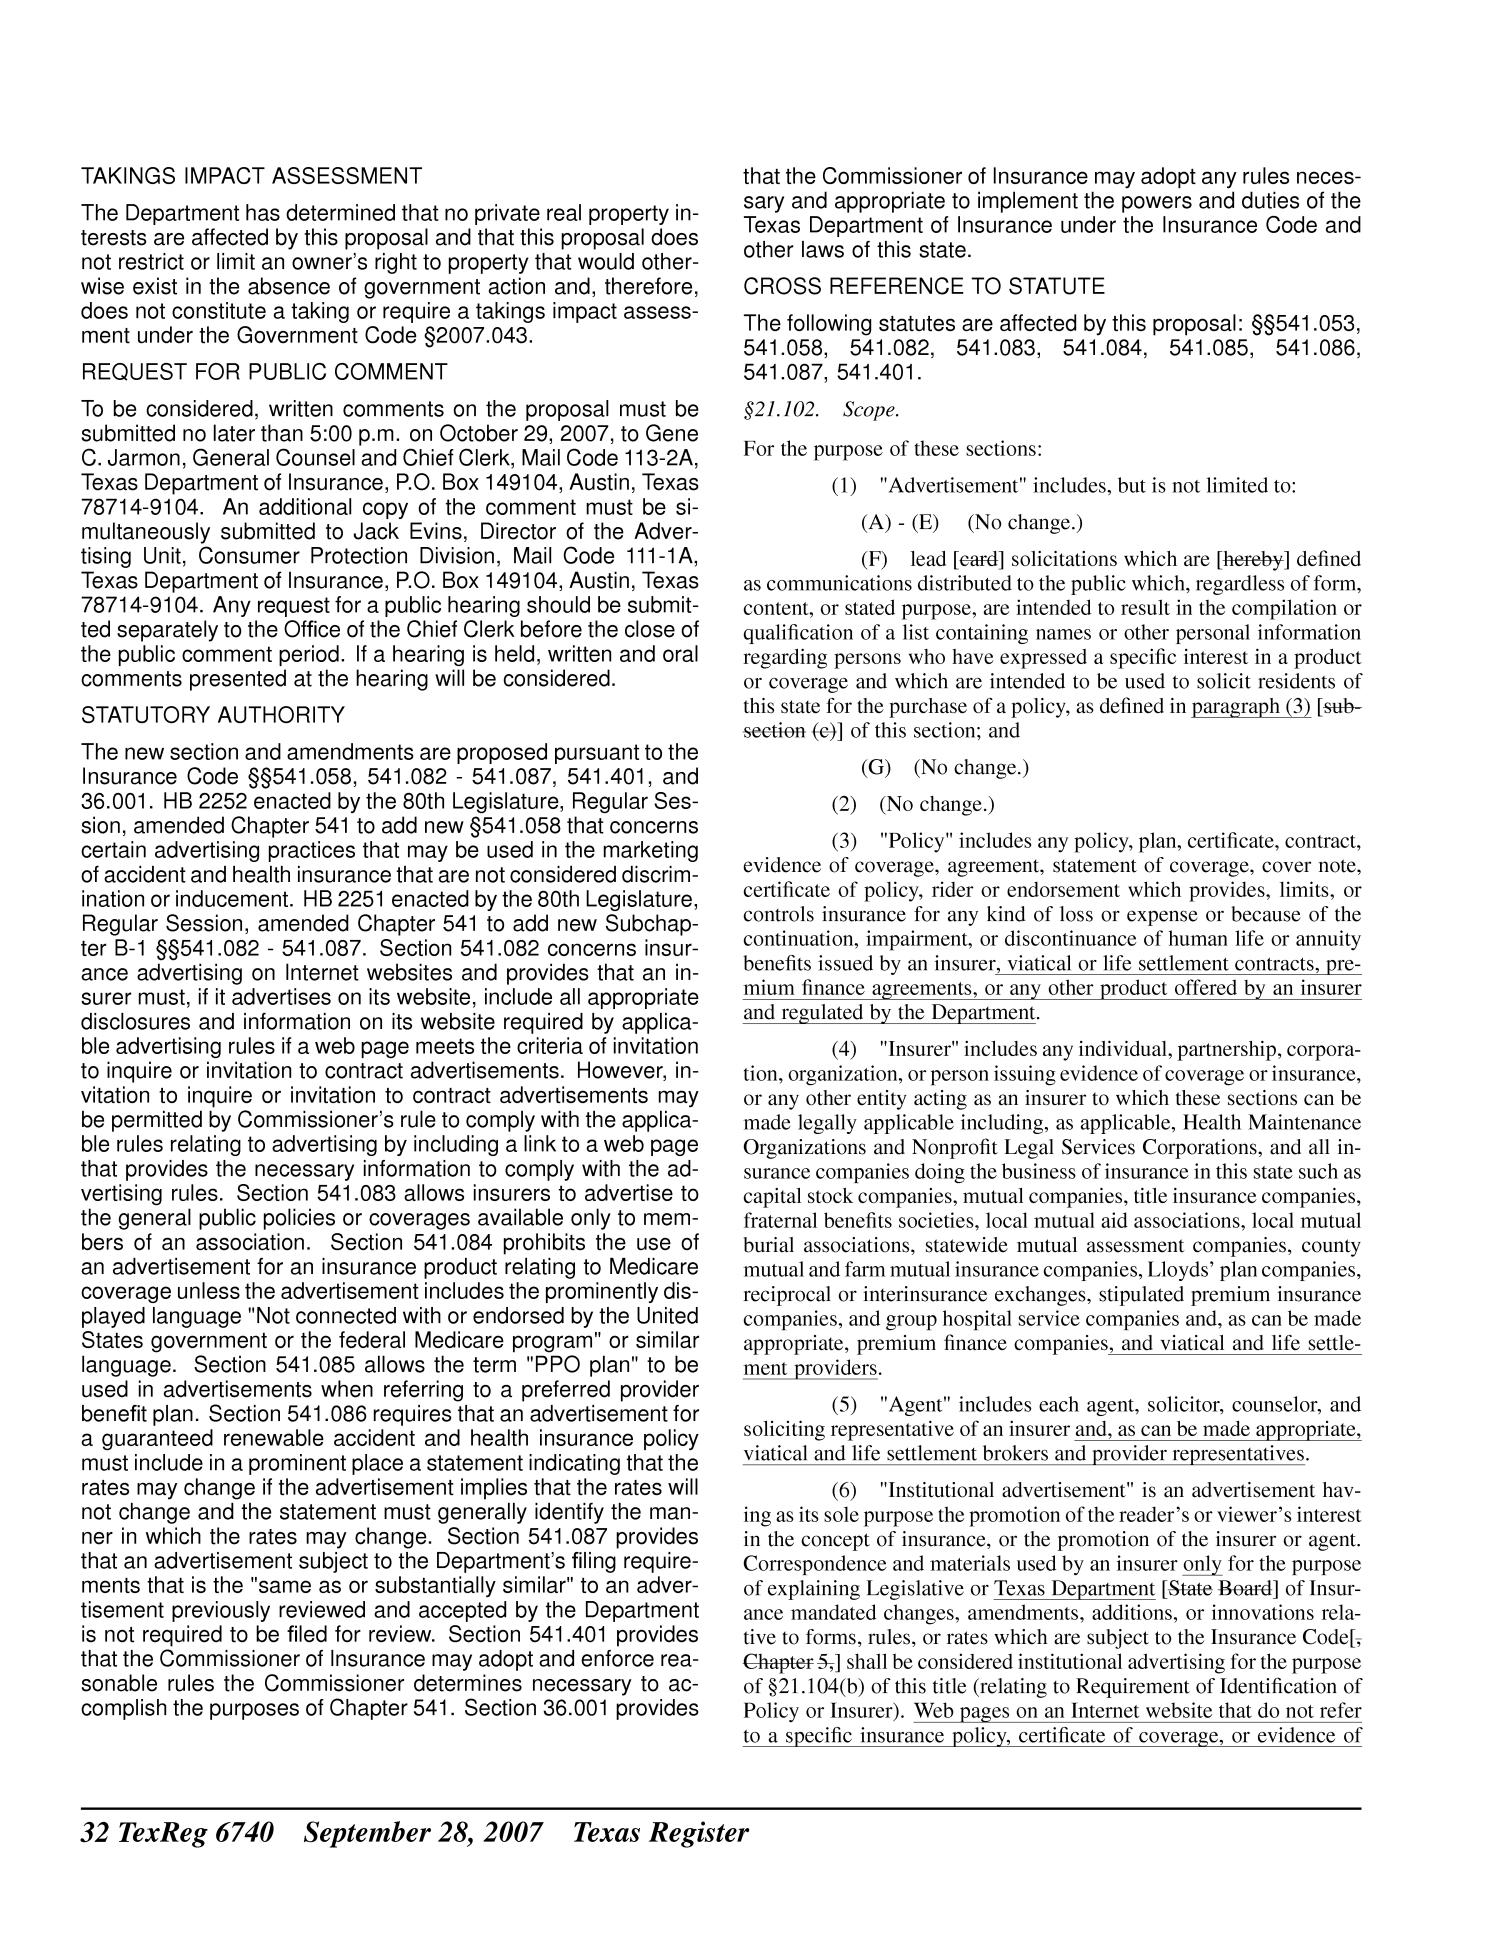 Texas Register, Volume 32, Number 39, Pages 6689-6904, September 28, 2007
                                                
                                                    6740
                                                